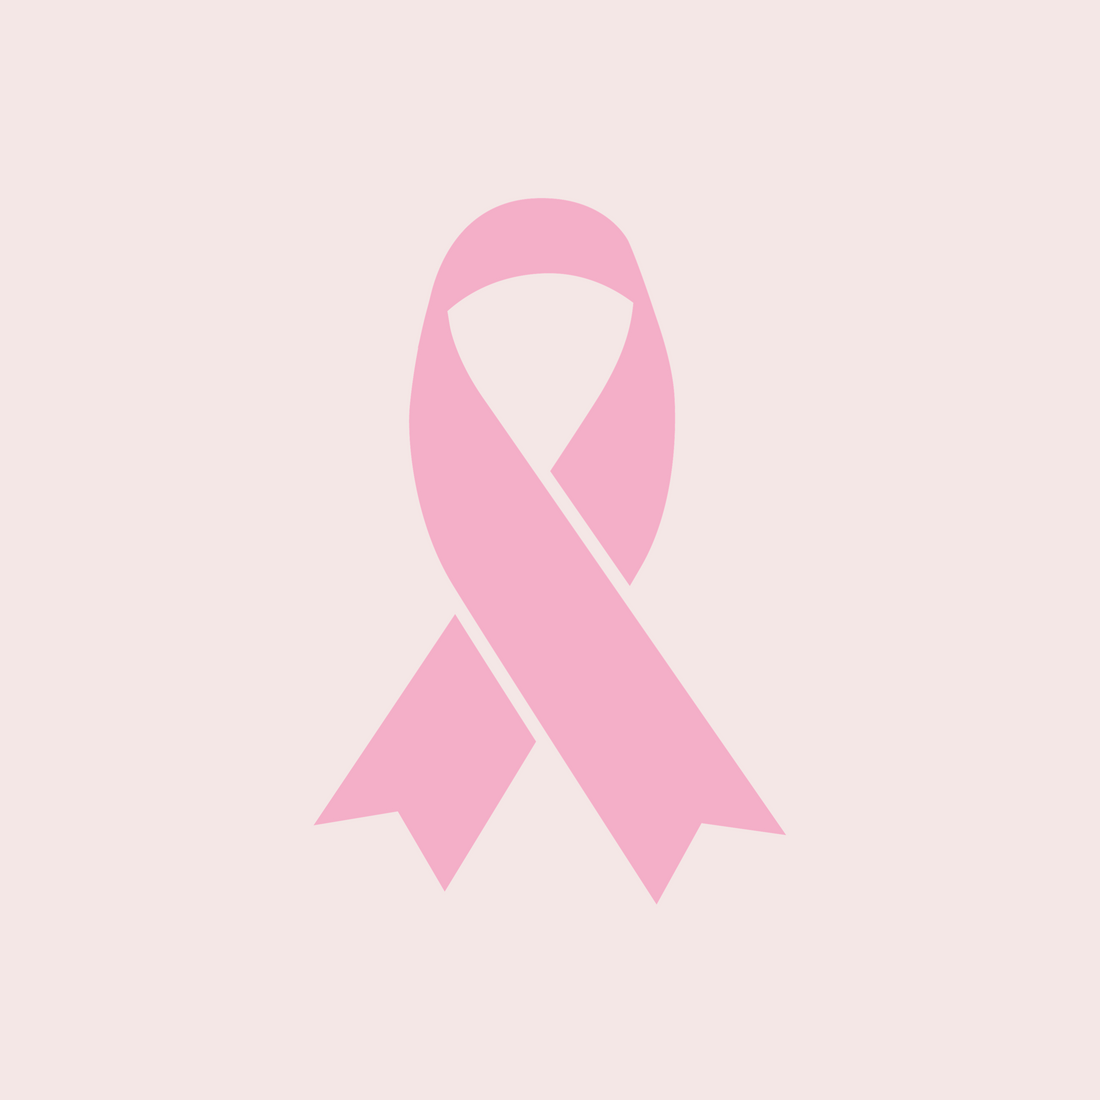 Mes rosa - Mes de lucha contra el cáncer de mama